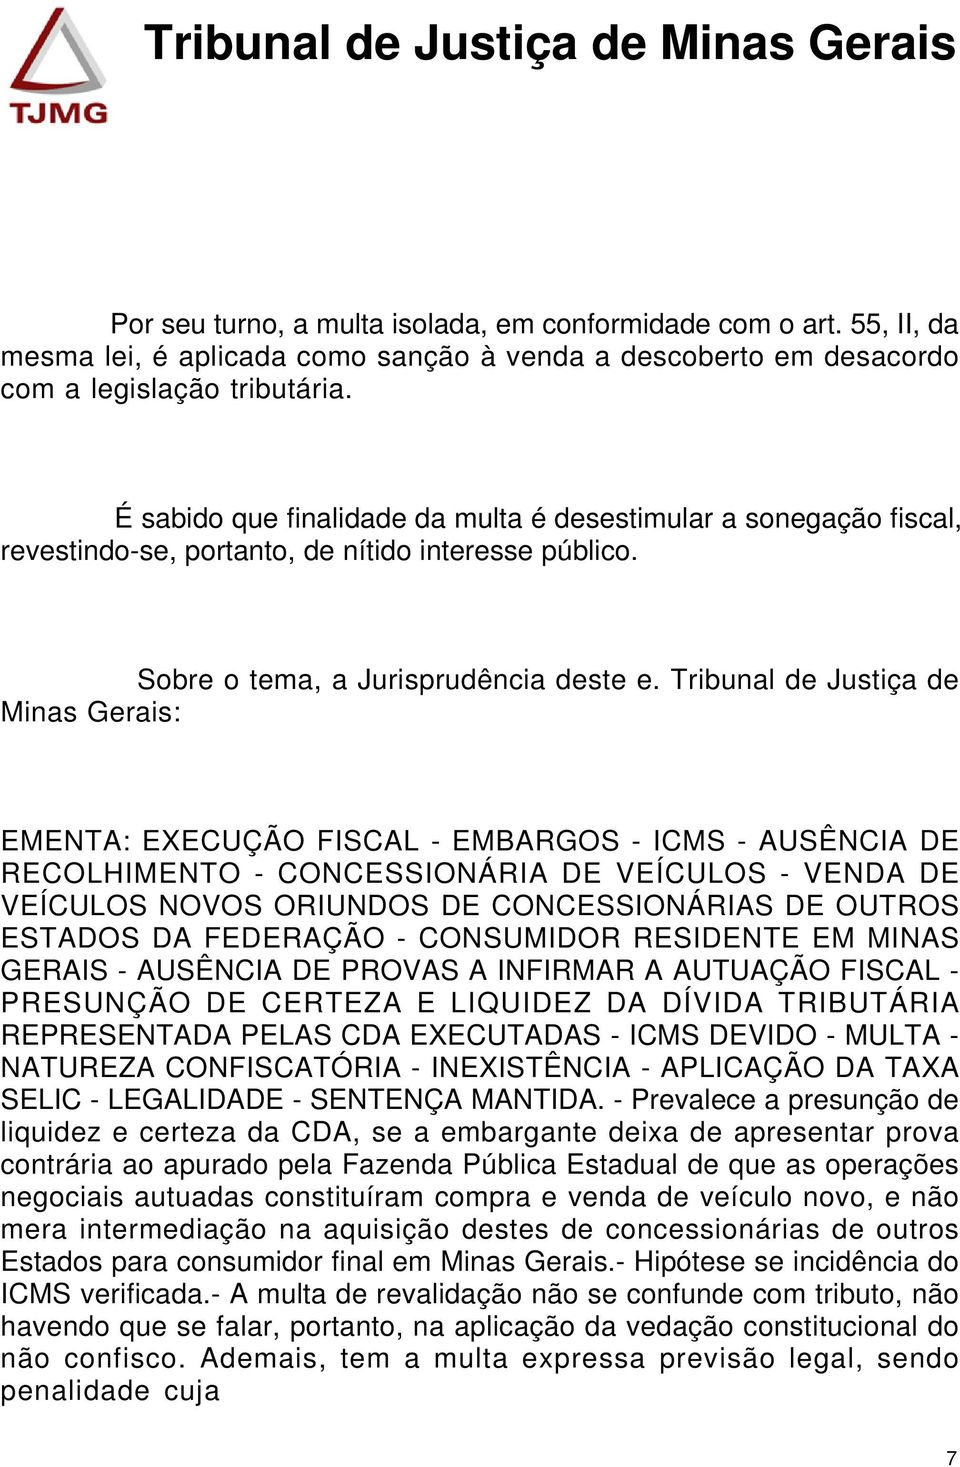 Tribunal de Justiça de Minas Gerais: EMENTA: EXECUÇÃO FISCAL - EMBARGOS - ICMS - AUSÊNCIA DE RECOLHIMENTO - CONCESSIONÁRIA DE VEÍCULOS - VENDA DE VEÍCULOS NOVOS ORIUNDOS DE CONCESSIONÁRIAS DE OUTROS